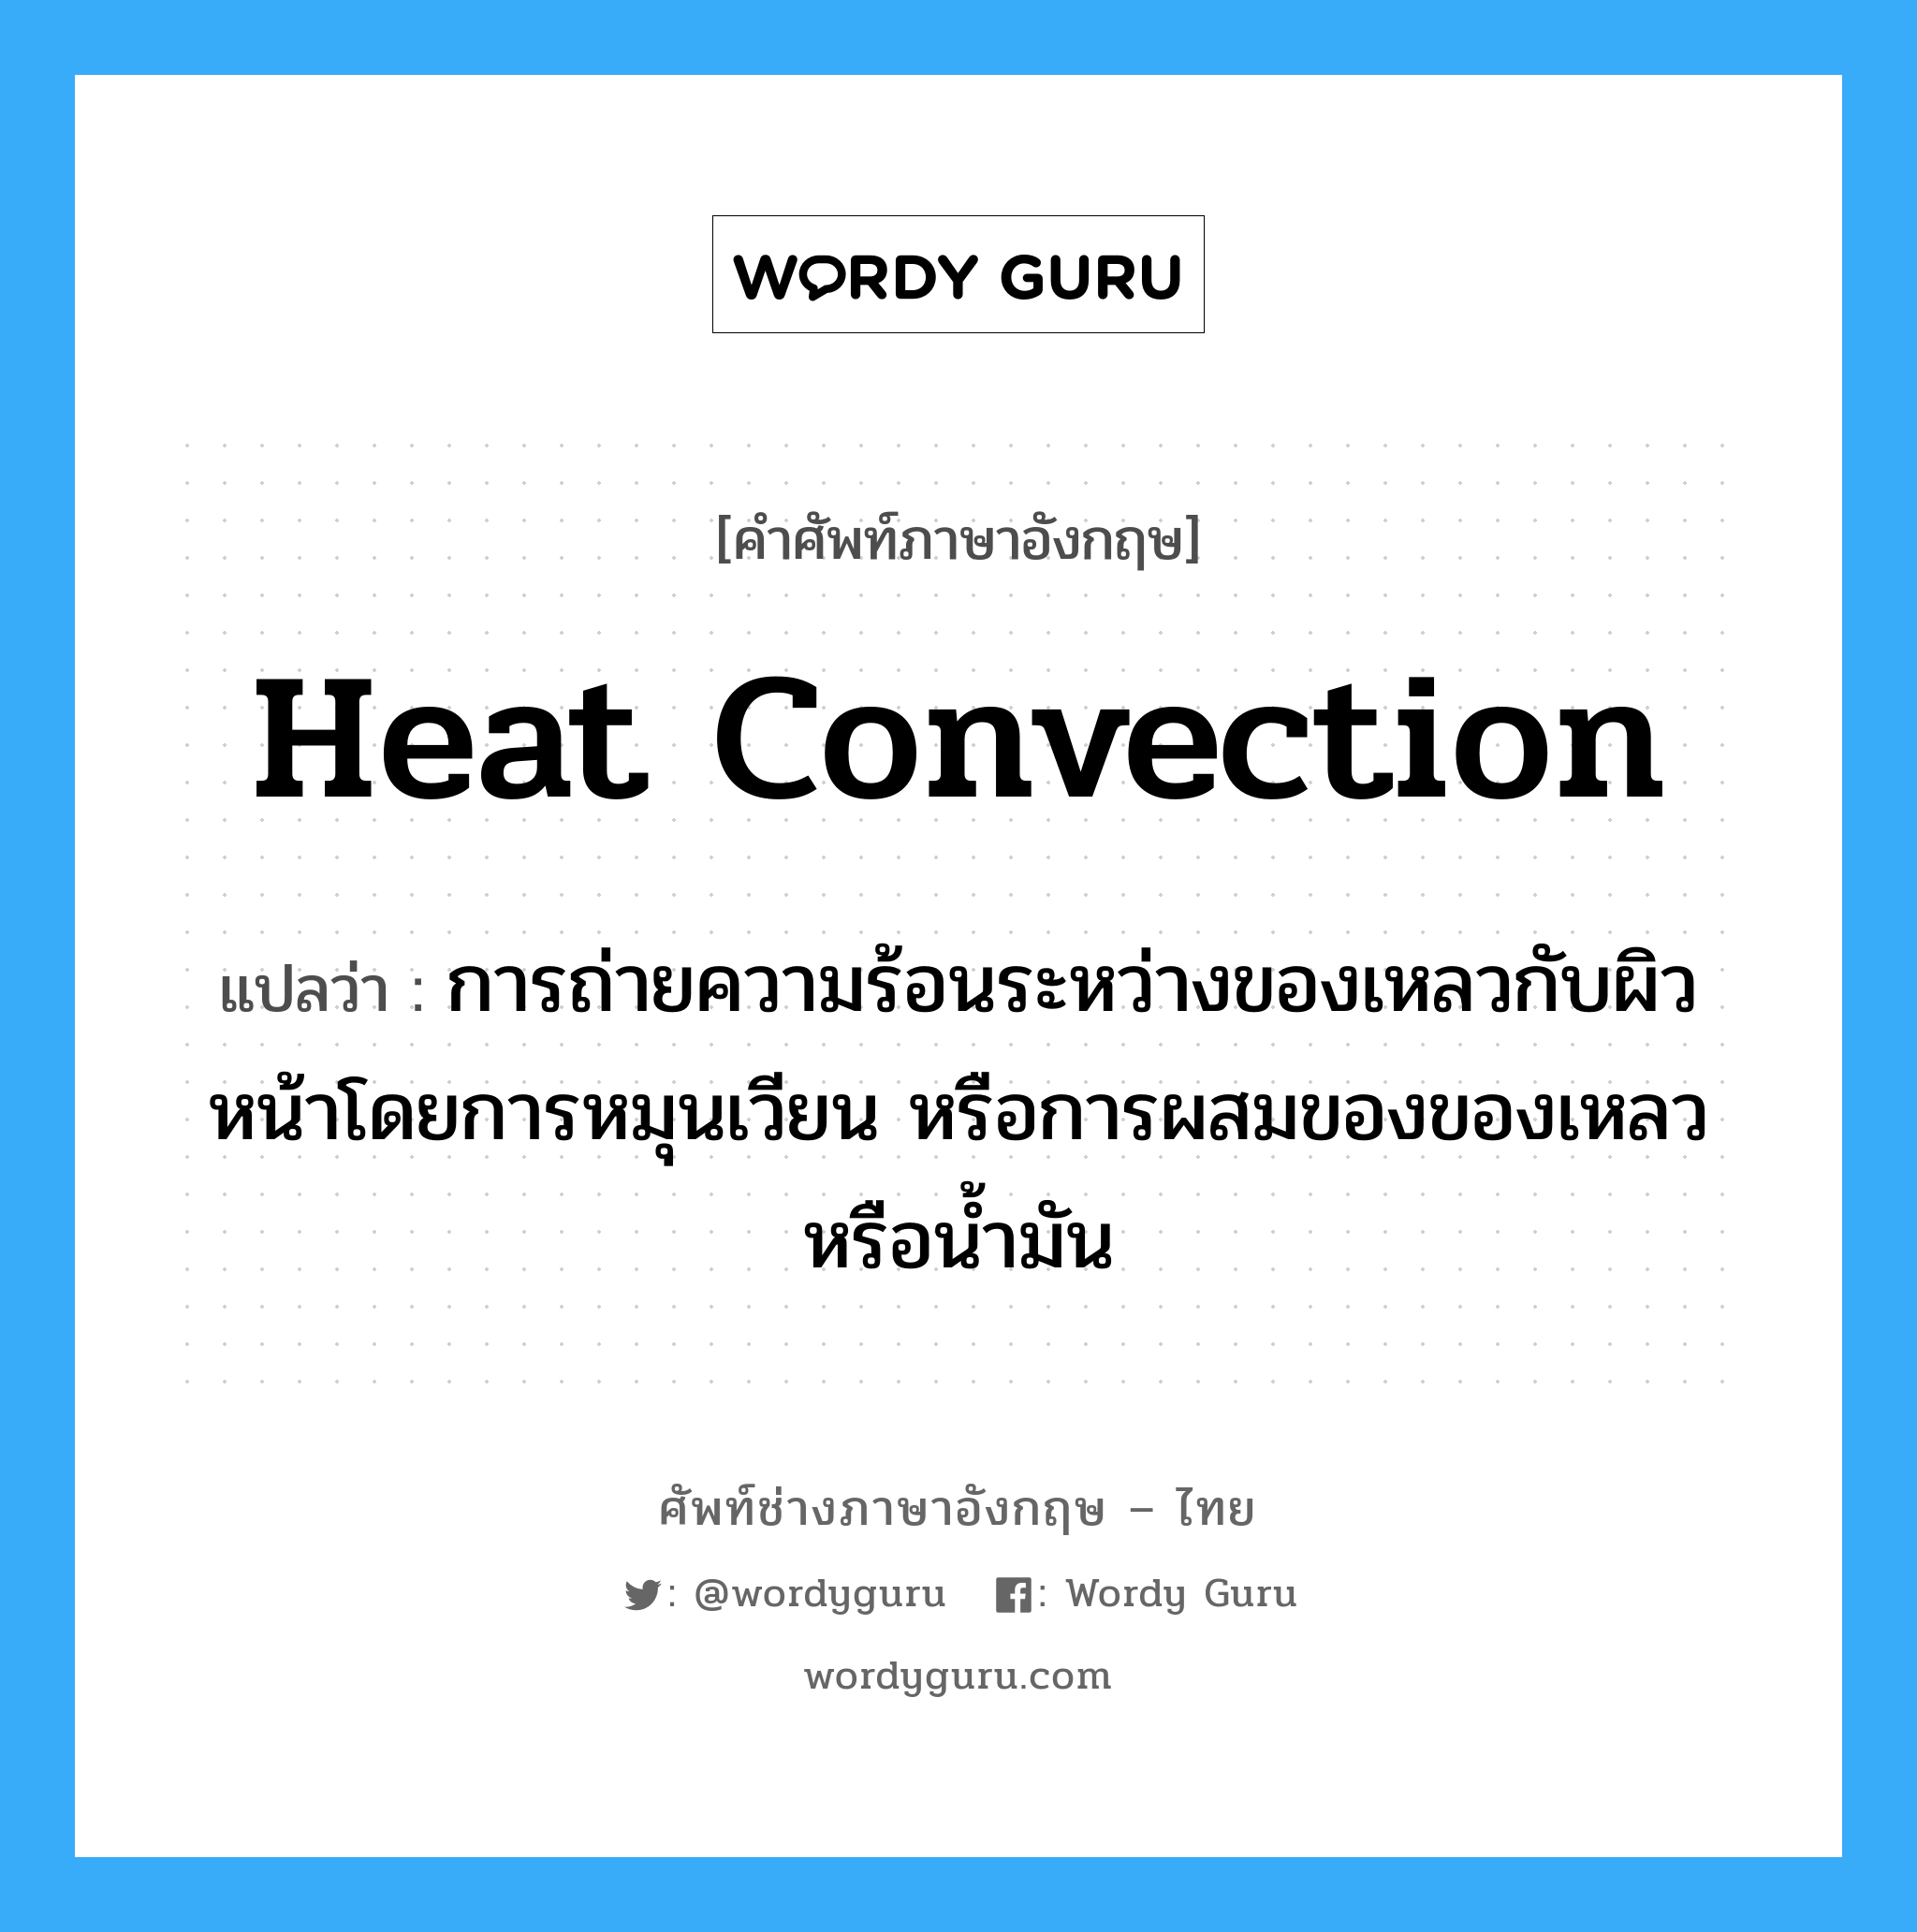 heat convection แปลว่า?, คำศัพท์ช่างภาษาอังกฤษ - ไทย heat convection คำศัพท์ภาษาอังกฤษ heat convection แปลว่า การถ่ายความร้อนระหว่างของเหลวกับผิวหน้าโดยการหมุนเวียน หรือการผสมของของเหลวหรือน้ำมัน